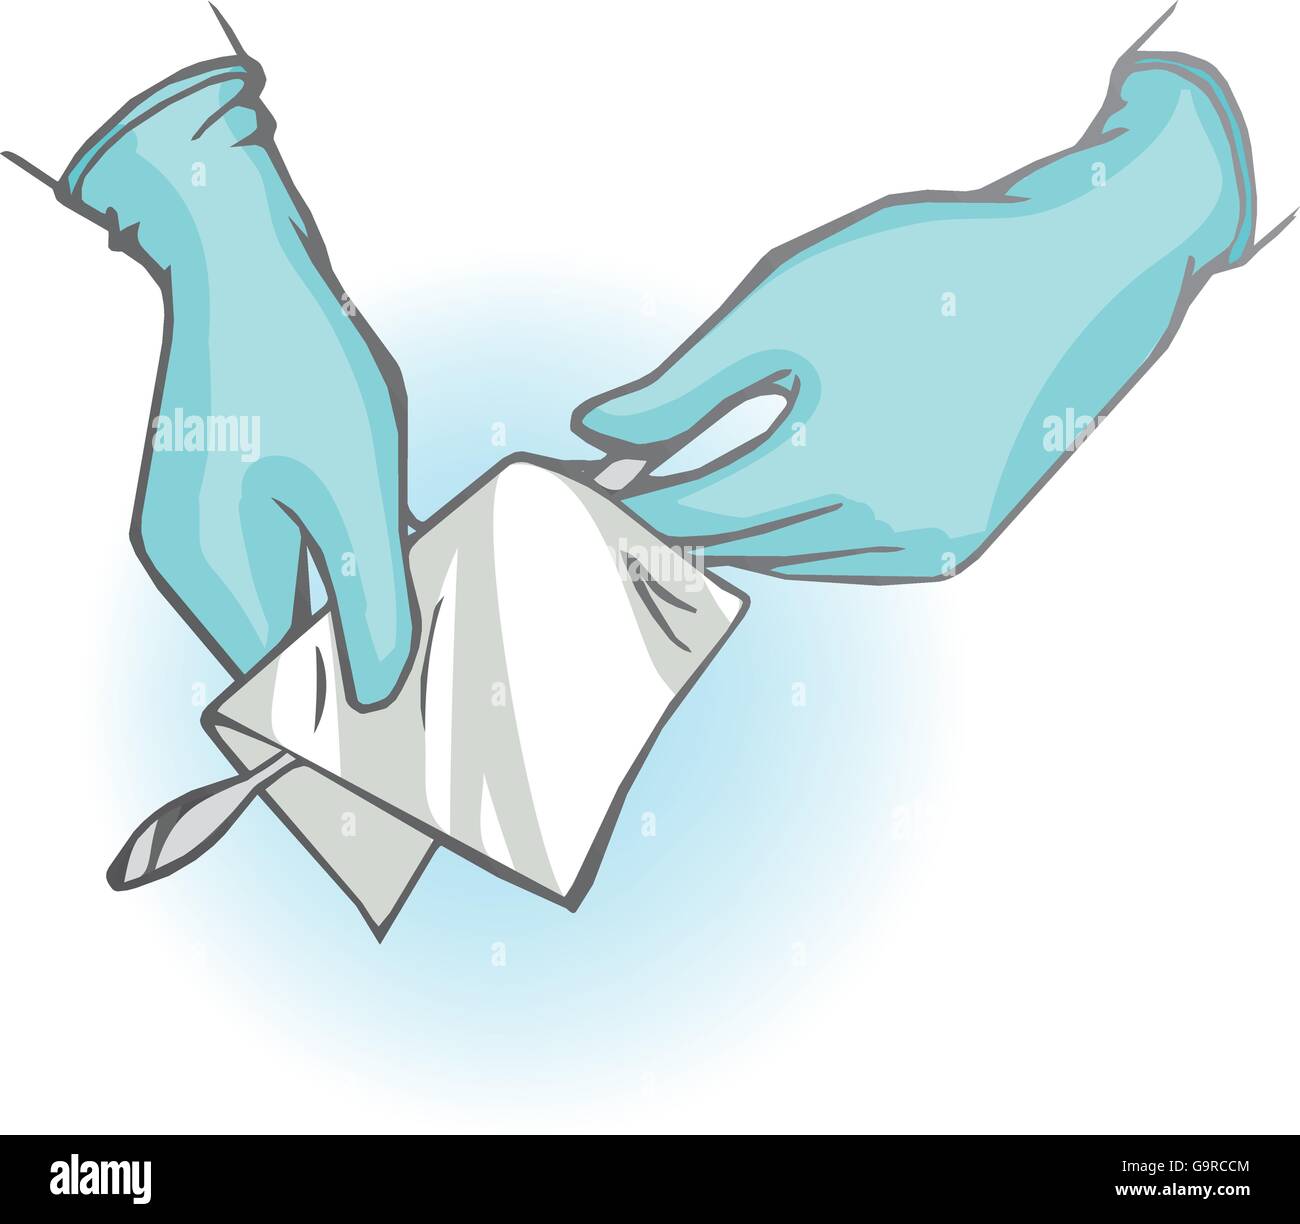 Médecin mains avec des gants séchage un scalpel médicaux Illustration de Vecteur